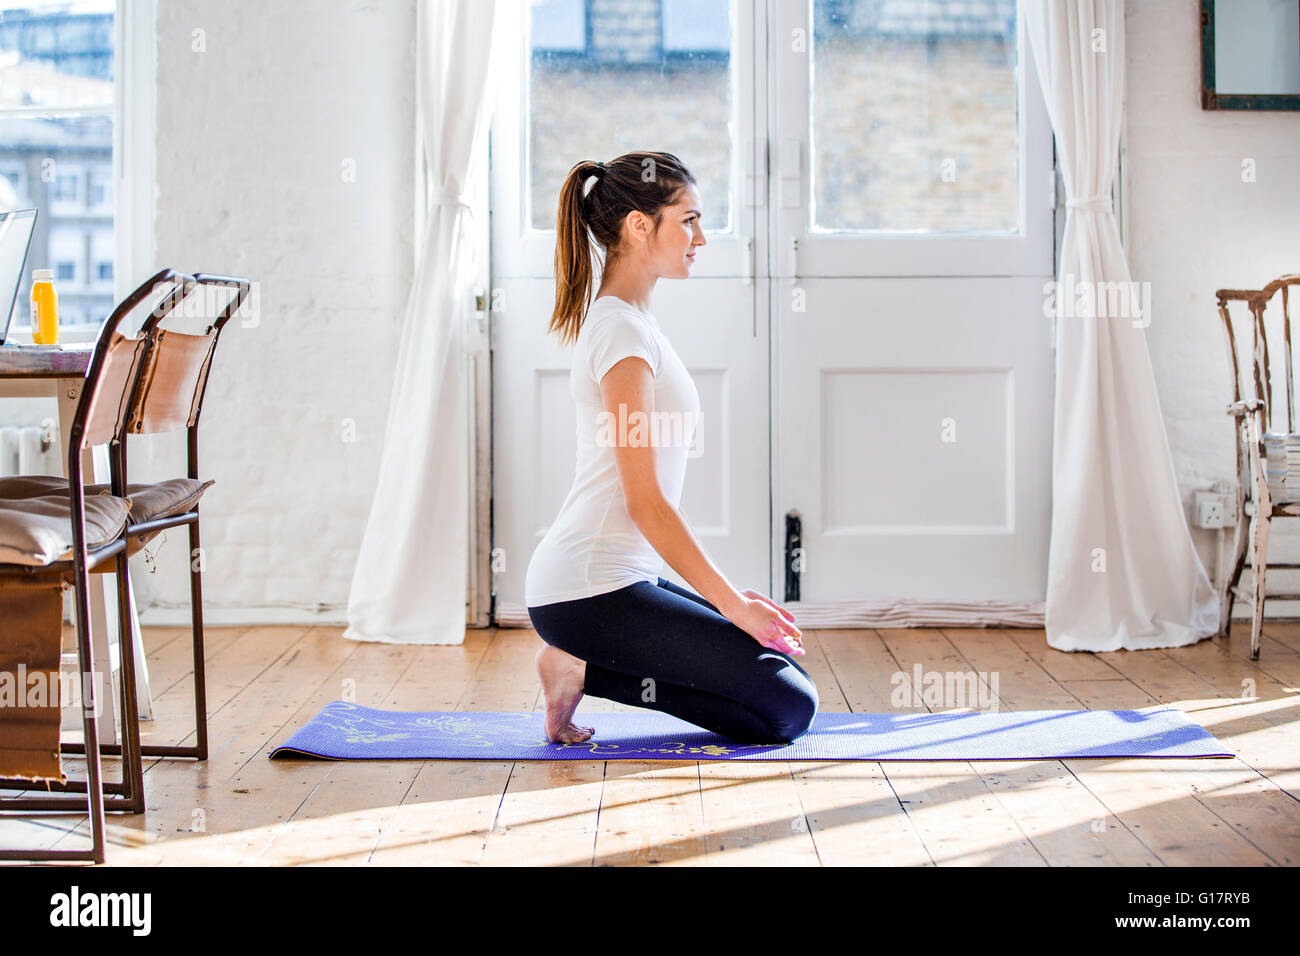 Young woman practicing yoga position agenouillée dans l'appartement Banque D'Images